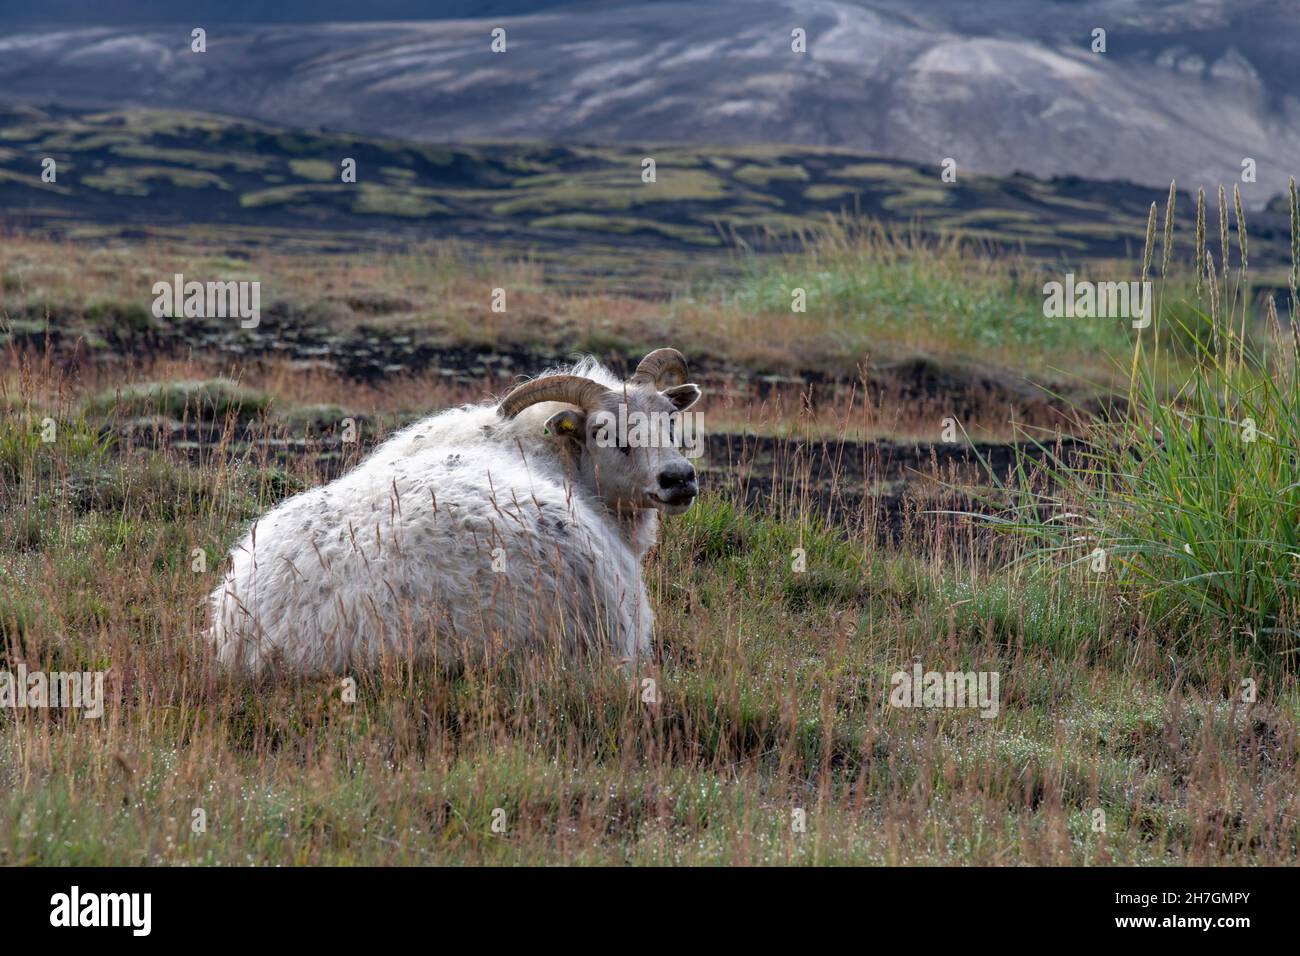 Vista ravvicinata di una pecora bianca in alcune delle zone erbose in un paesaggio altrimenti arido di roccia lavica nera dal vicino vulcano Katla Foto Stock